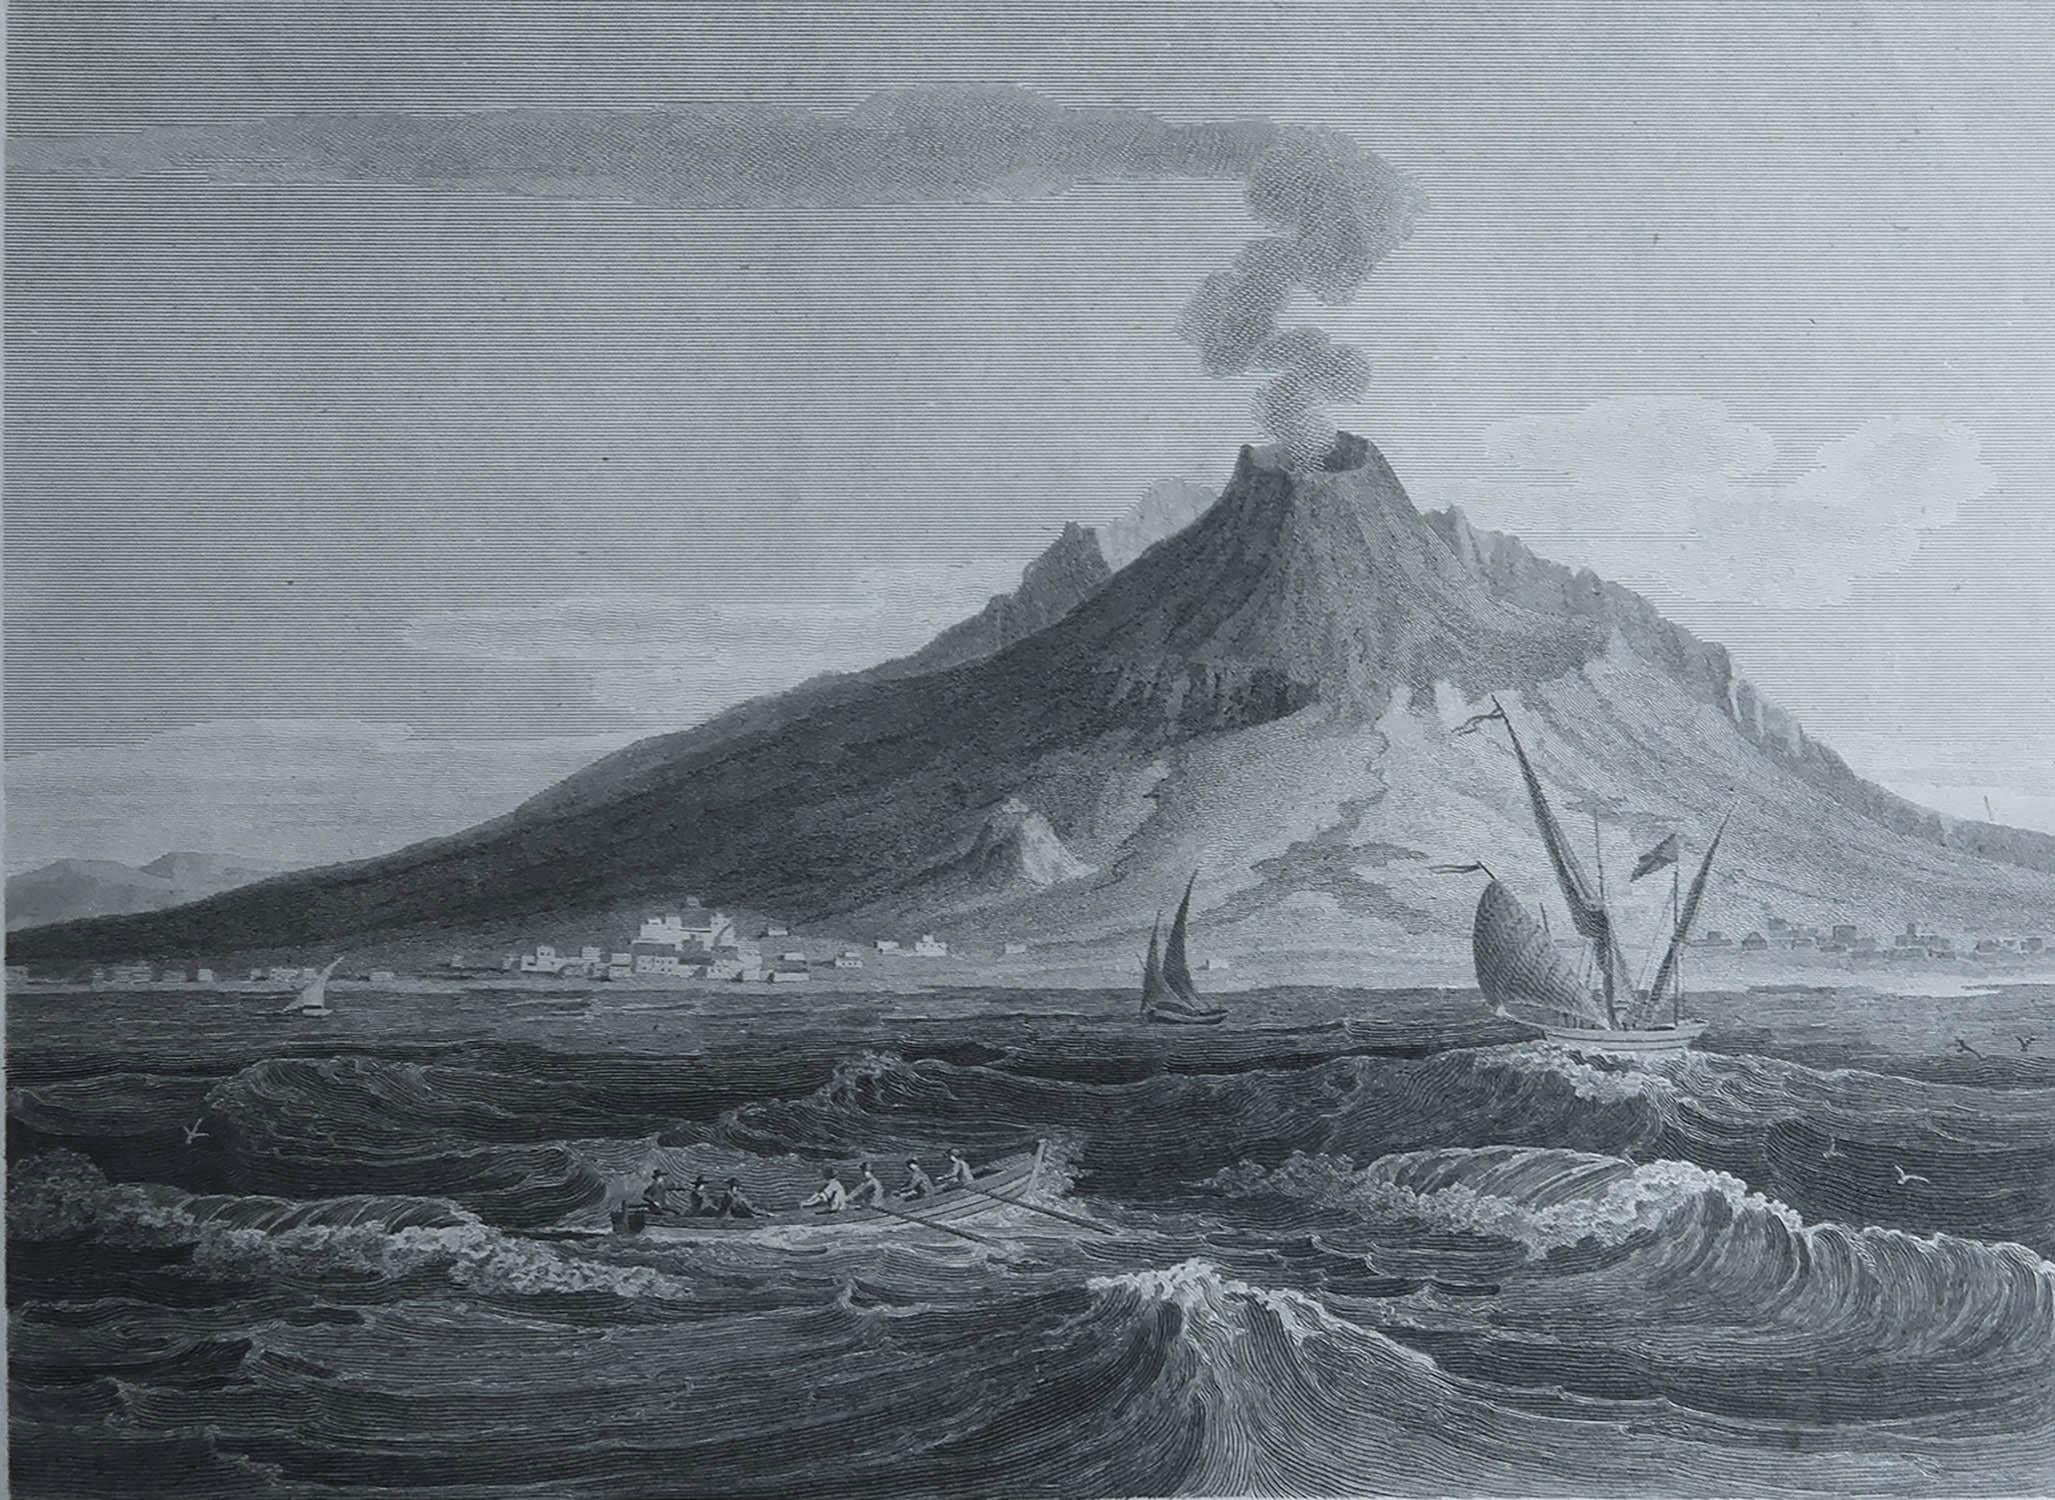 Superbe image du Mont Vésuve

Gravure sur cuivre de Lowry

Publié par Longman & Rees, Londres

Daté de 1802

Non encadré.

Livraison gratuite. 



